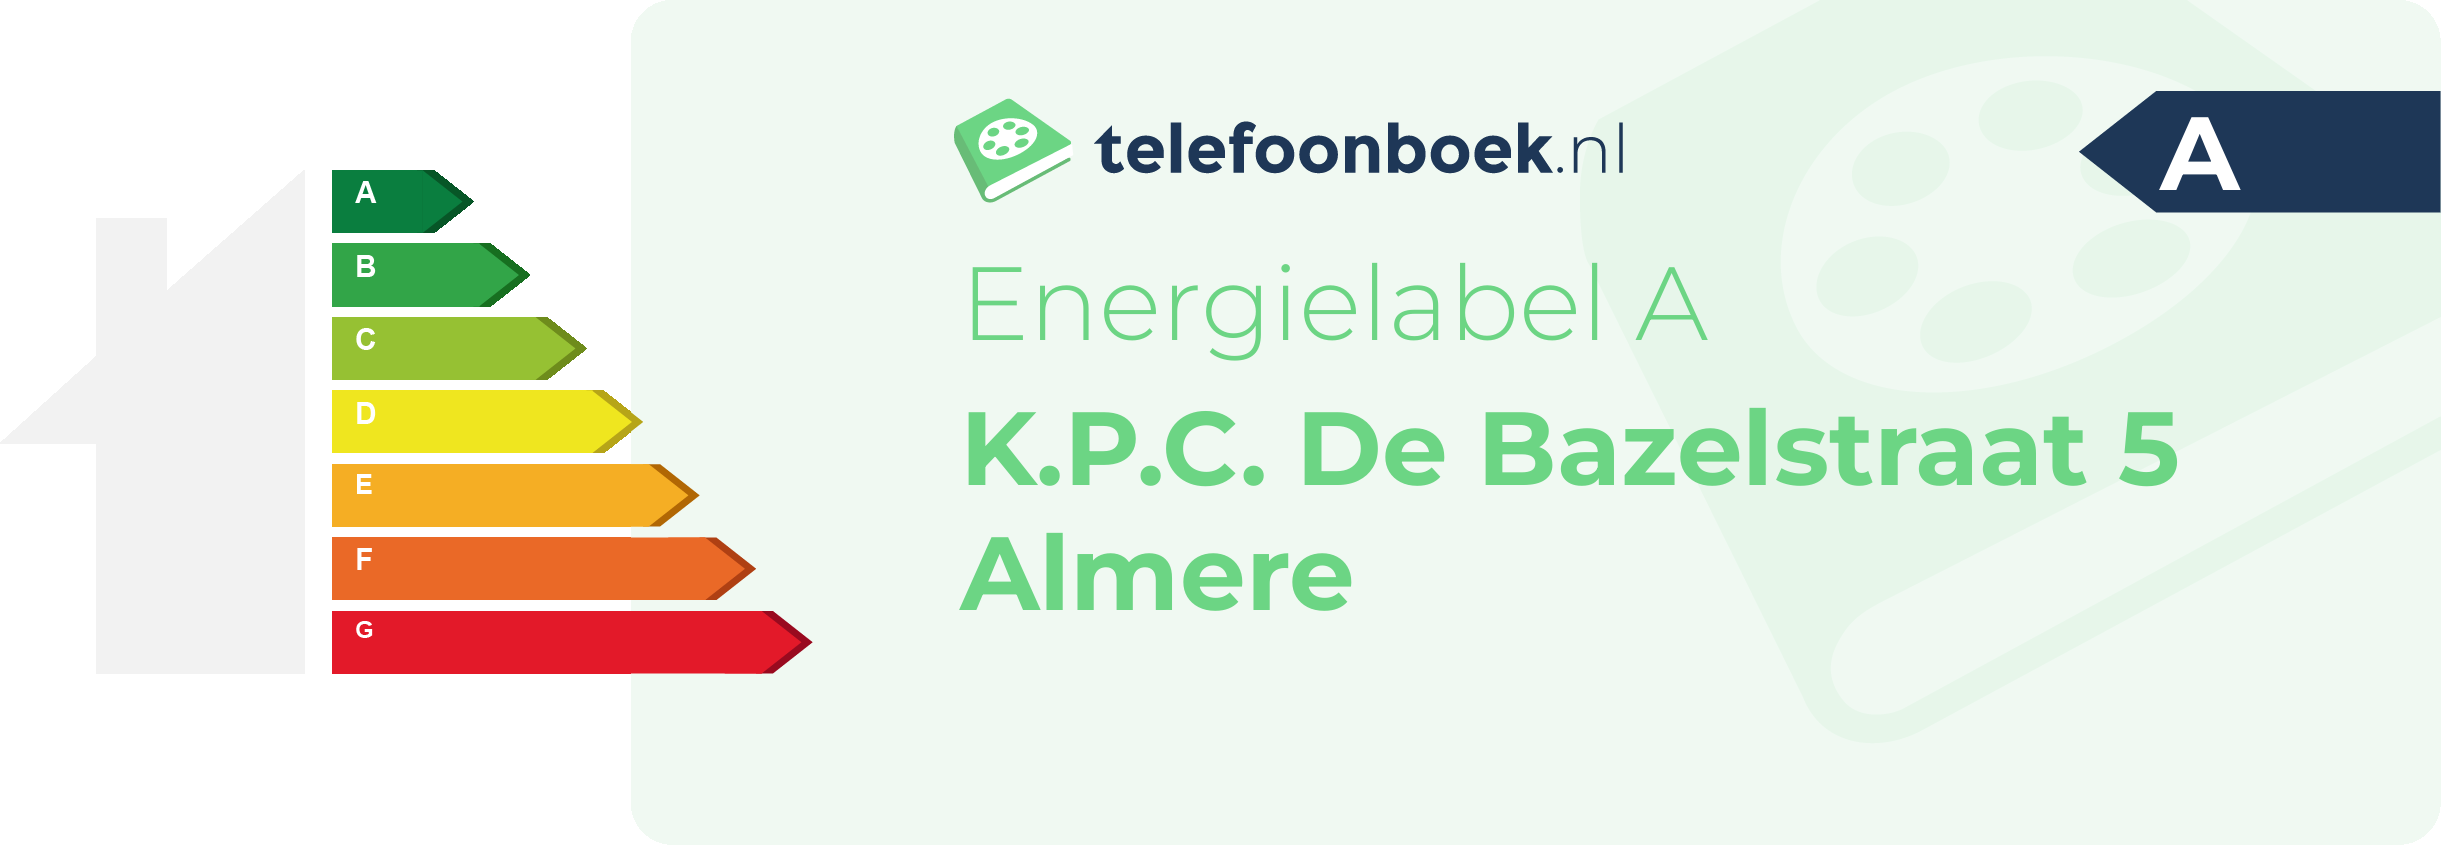 Energielabel K.P.C. De Bazelstraat 5 Almere